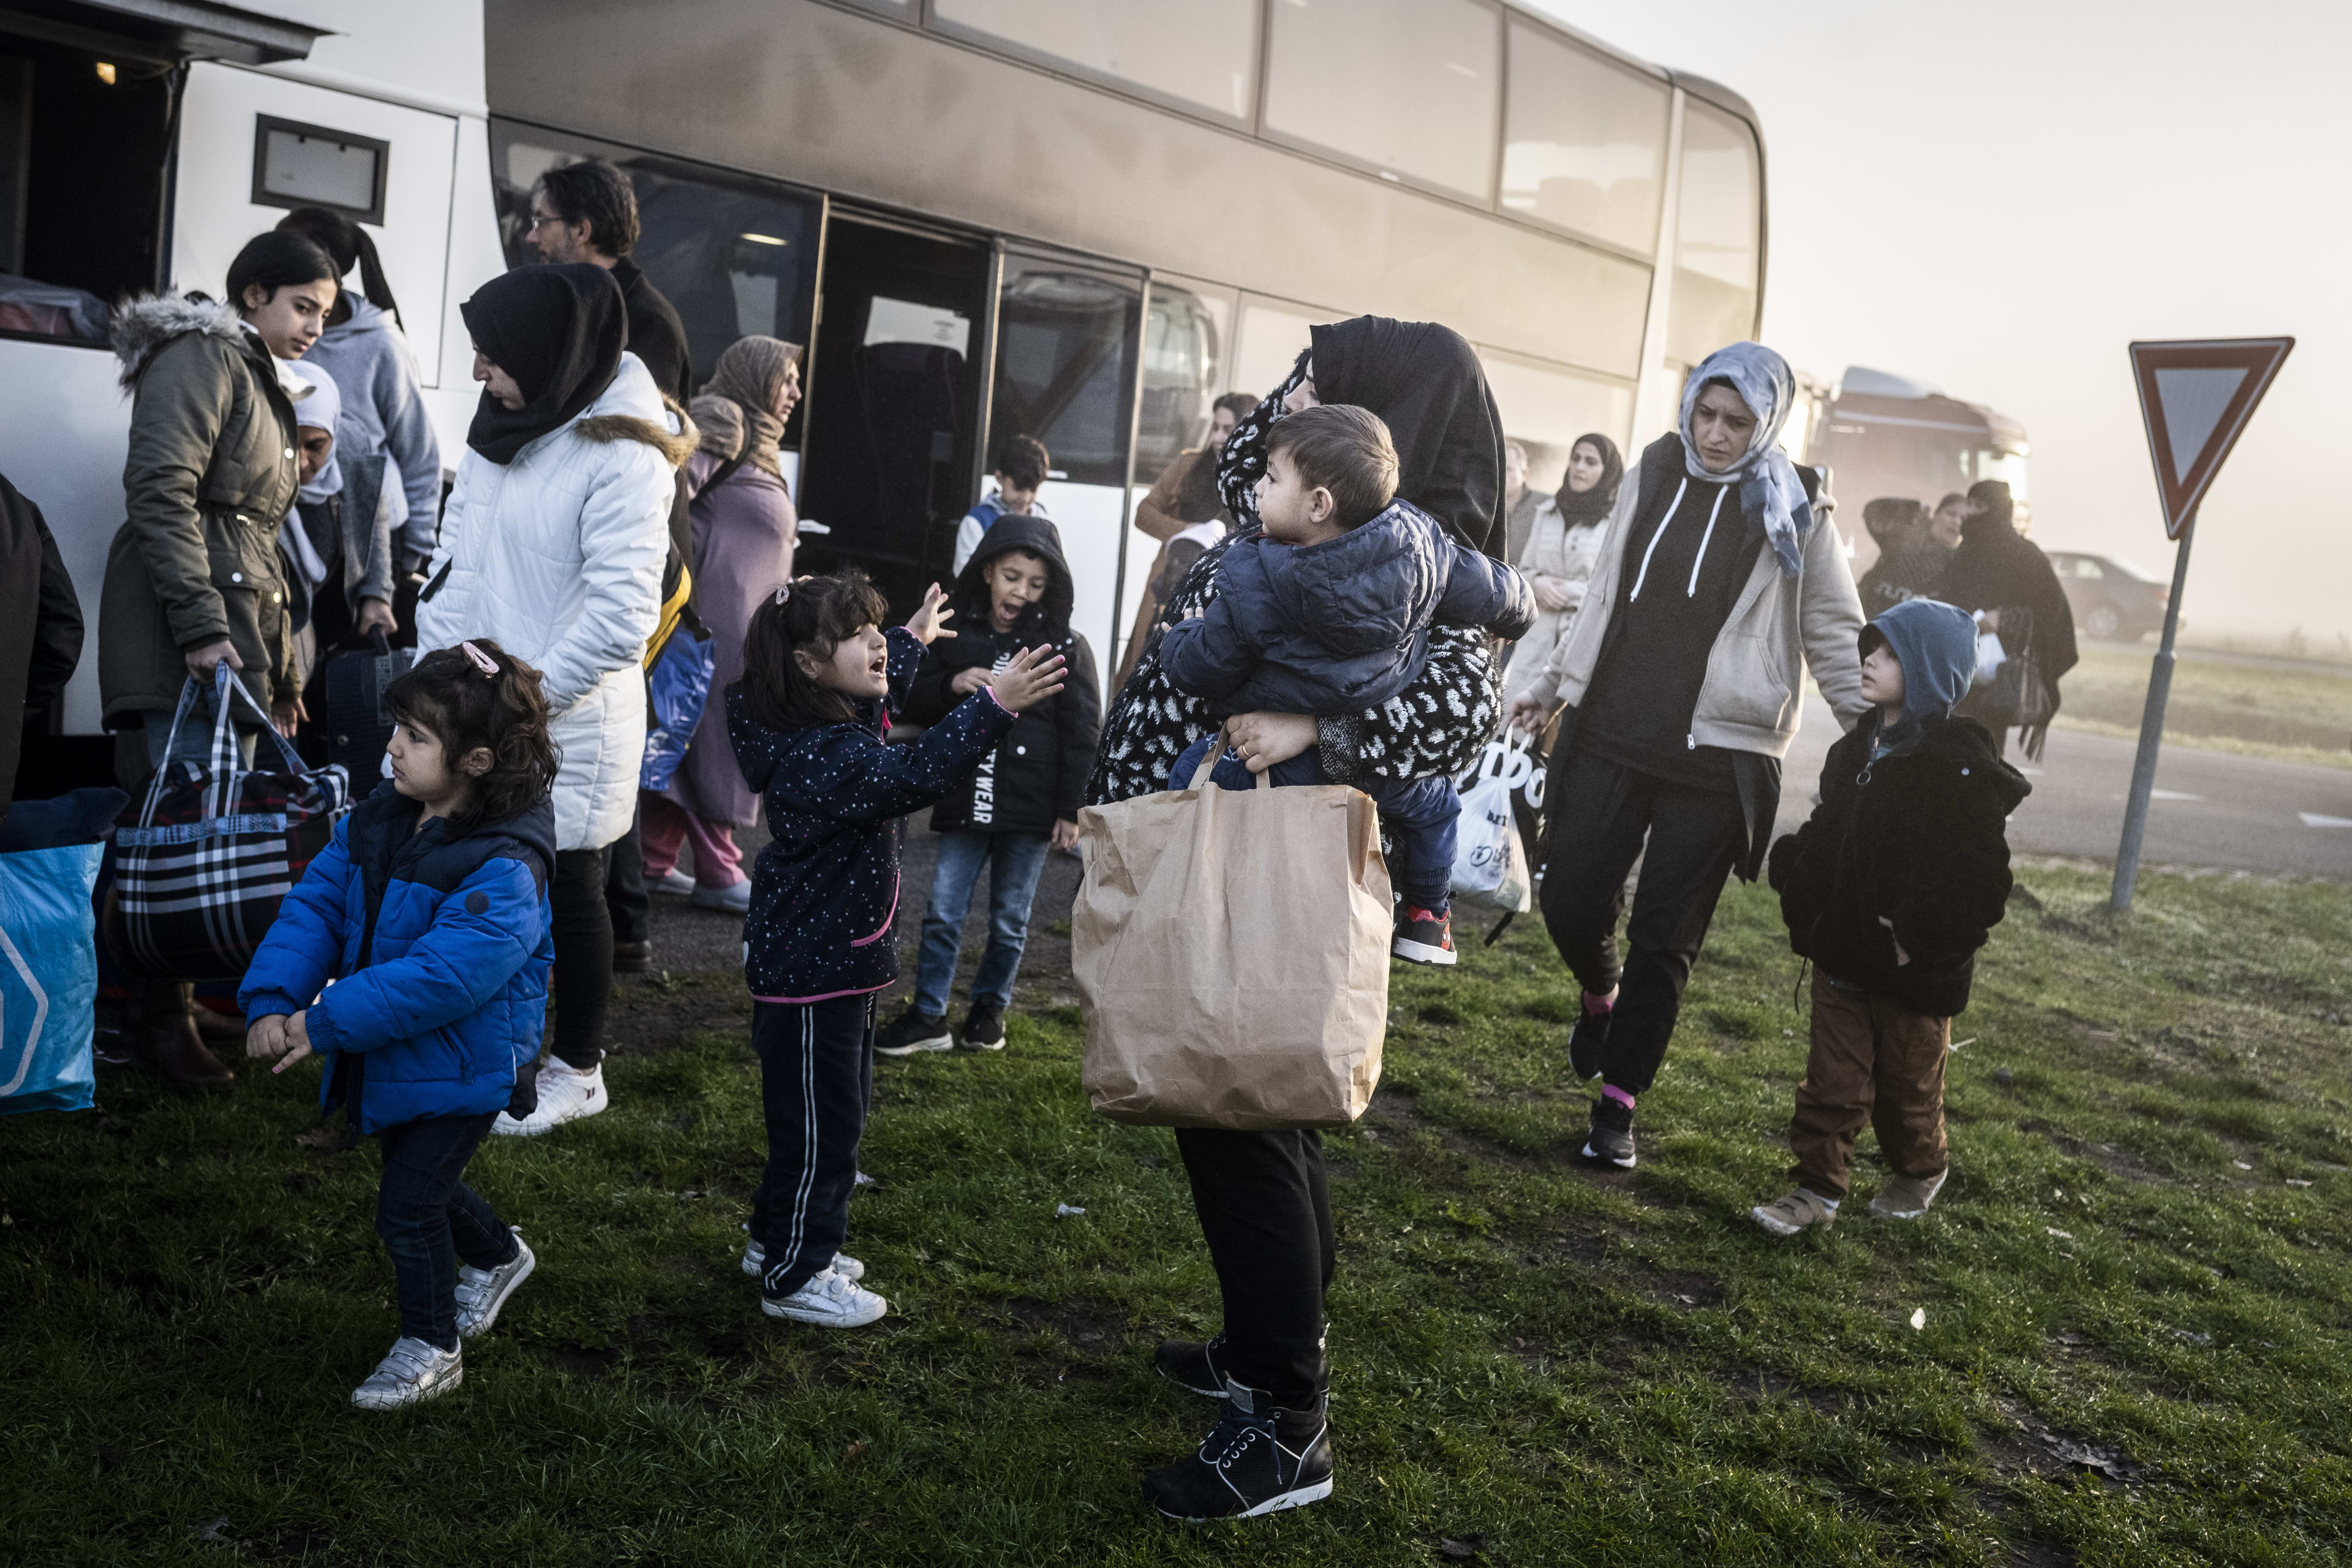 Limburgse burgemeesters: vrees voor ontwrichting samenleving door asielcrisis